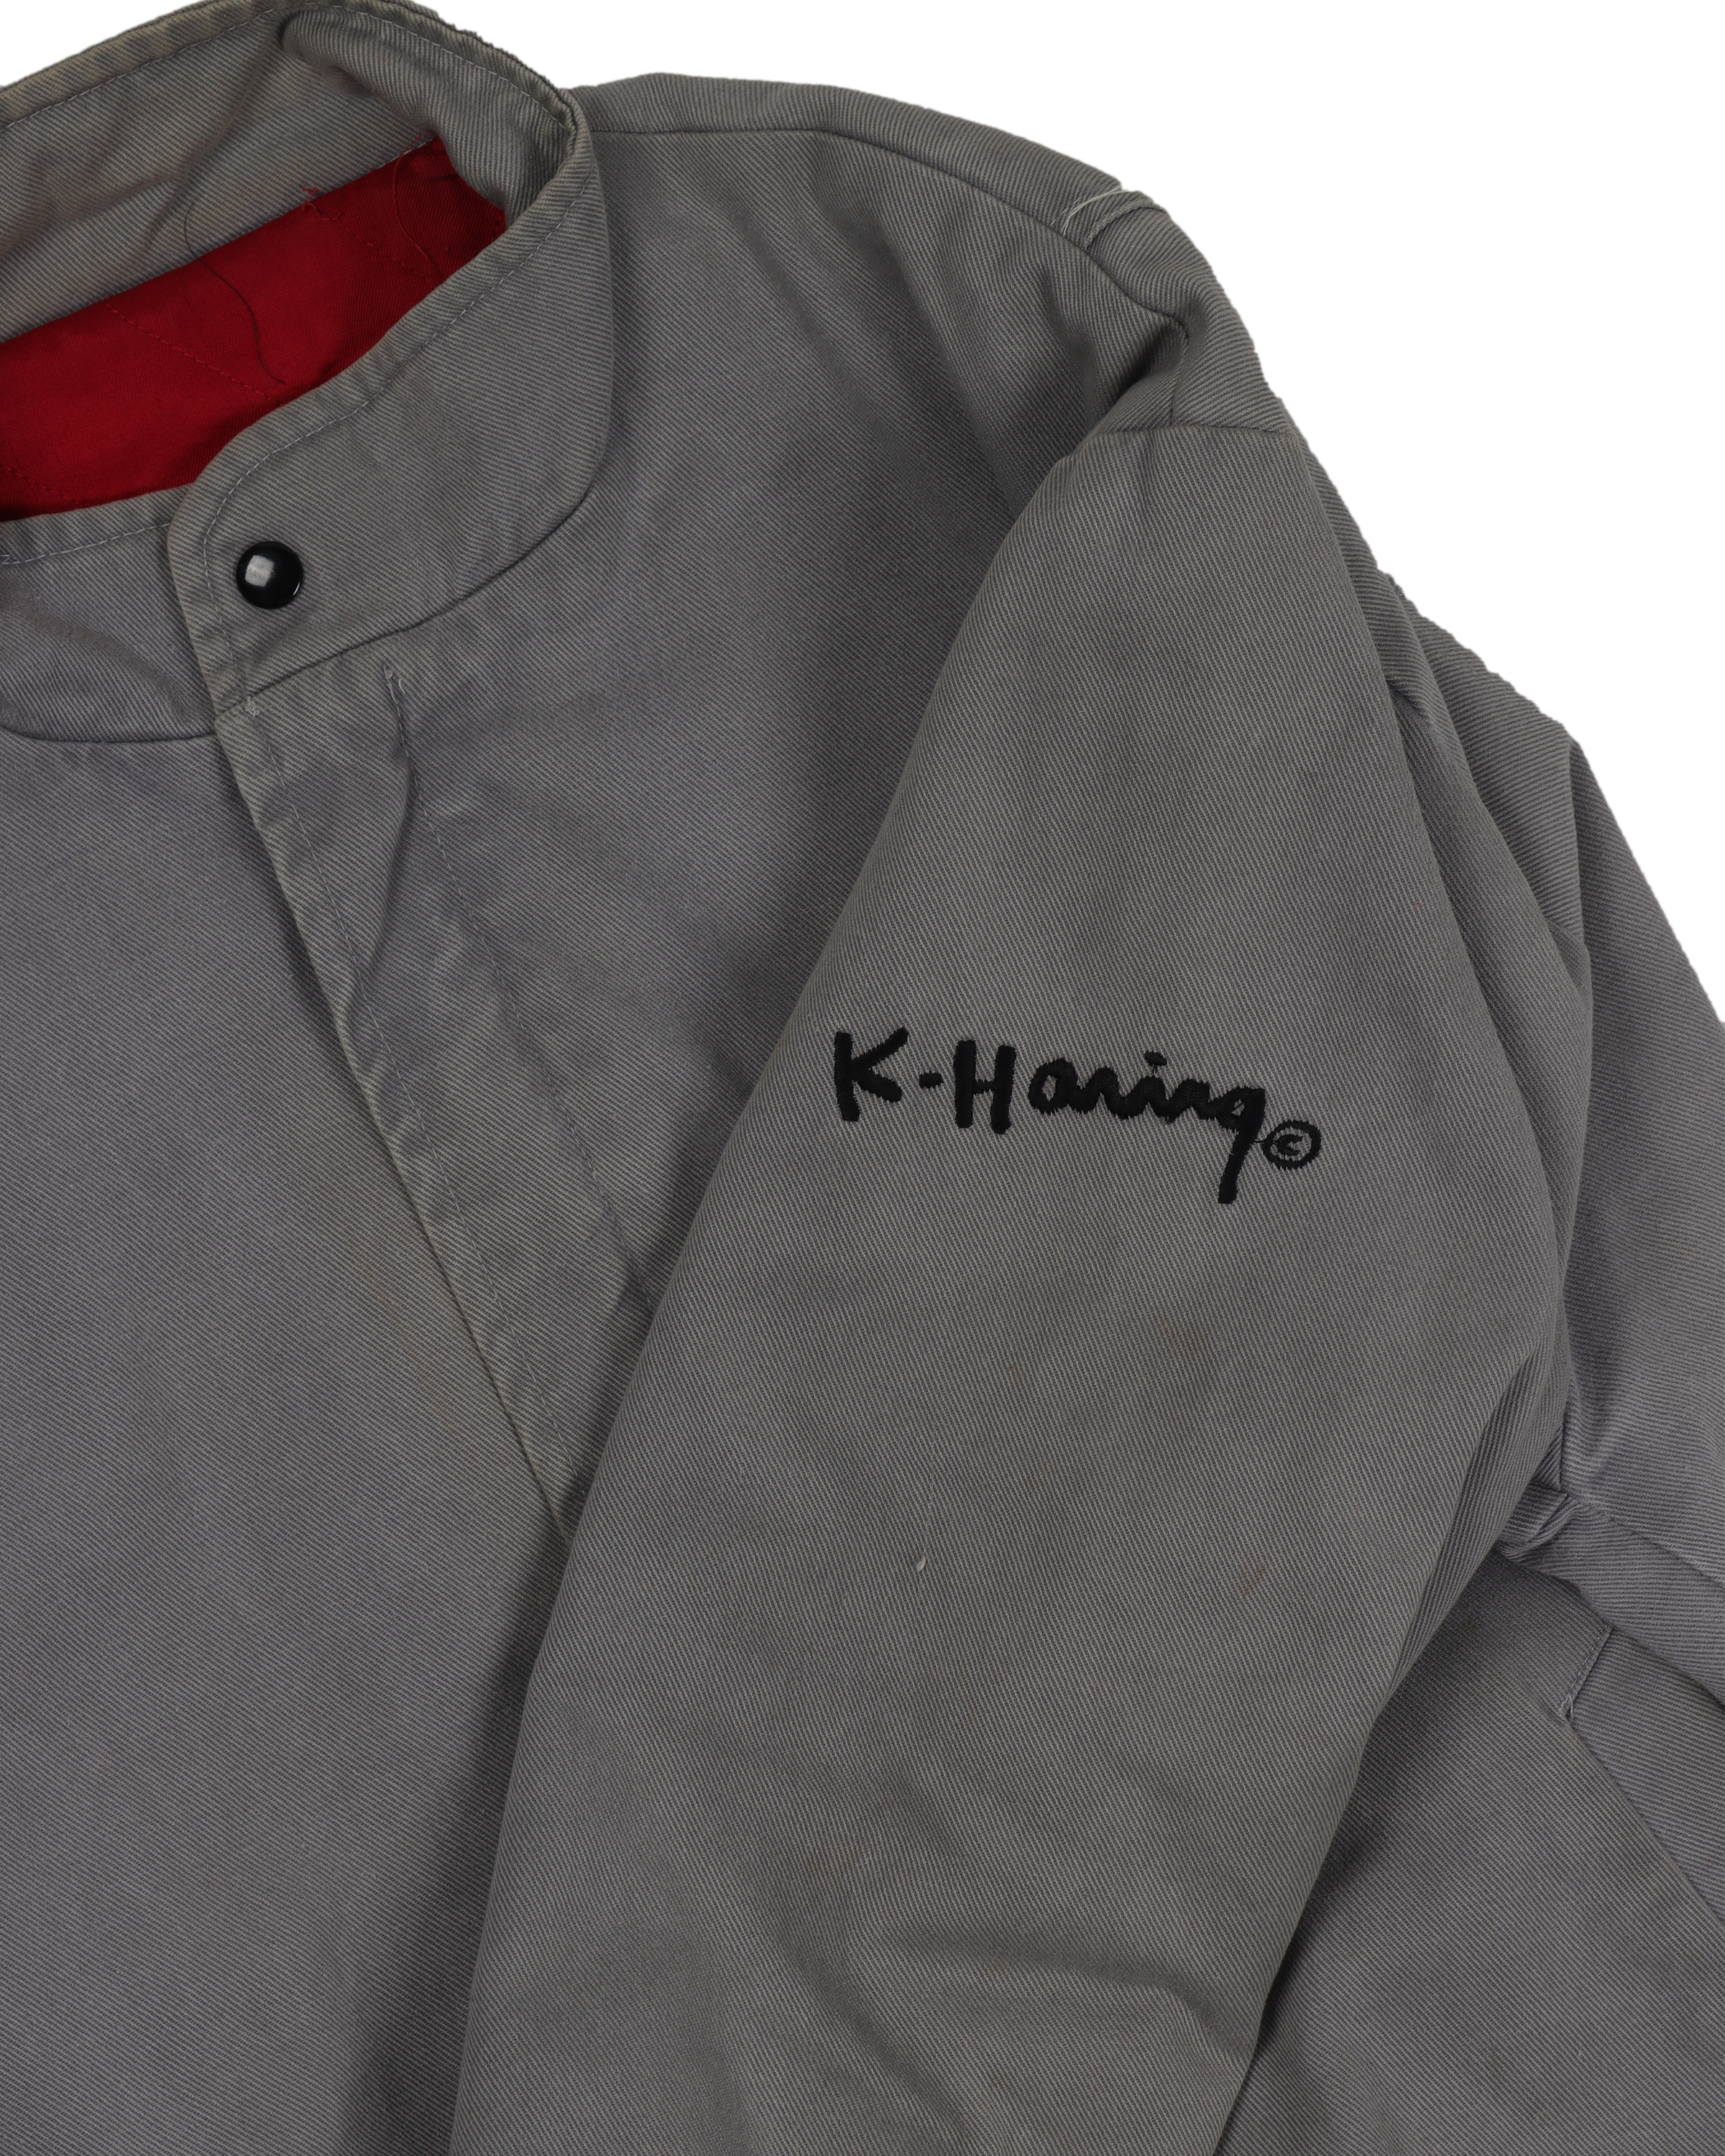 Keith Haring Tour Jacket